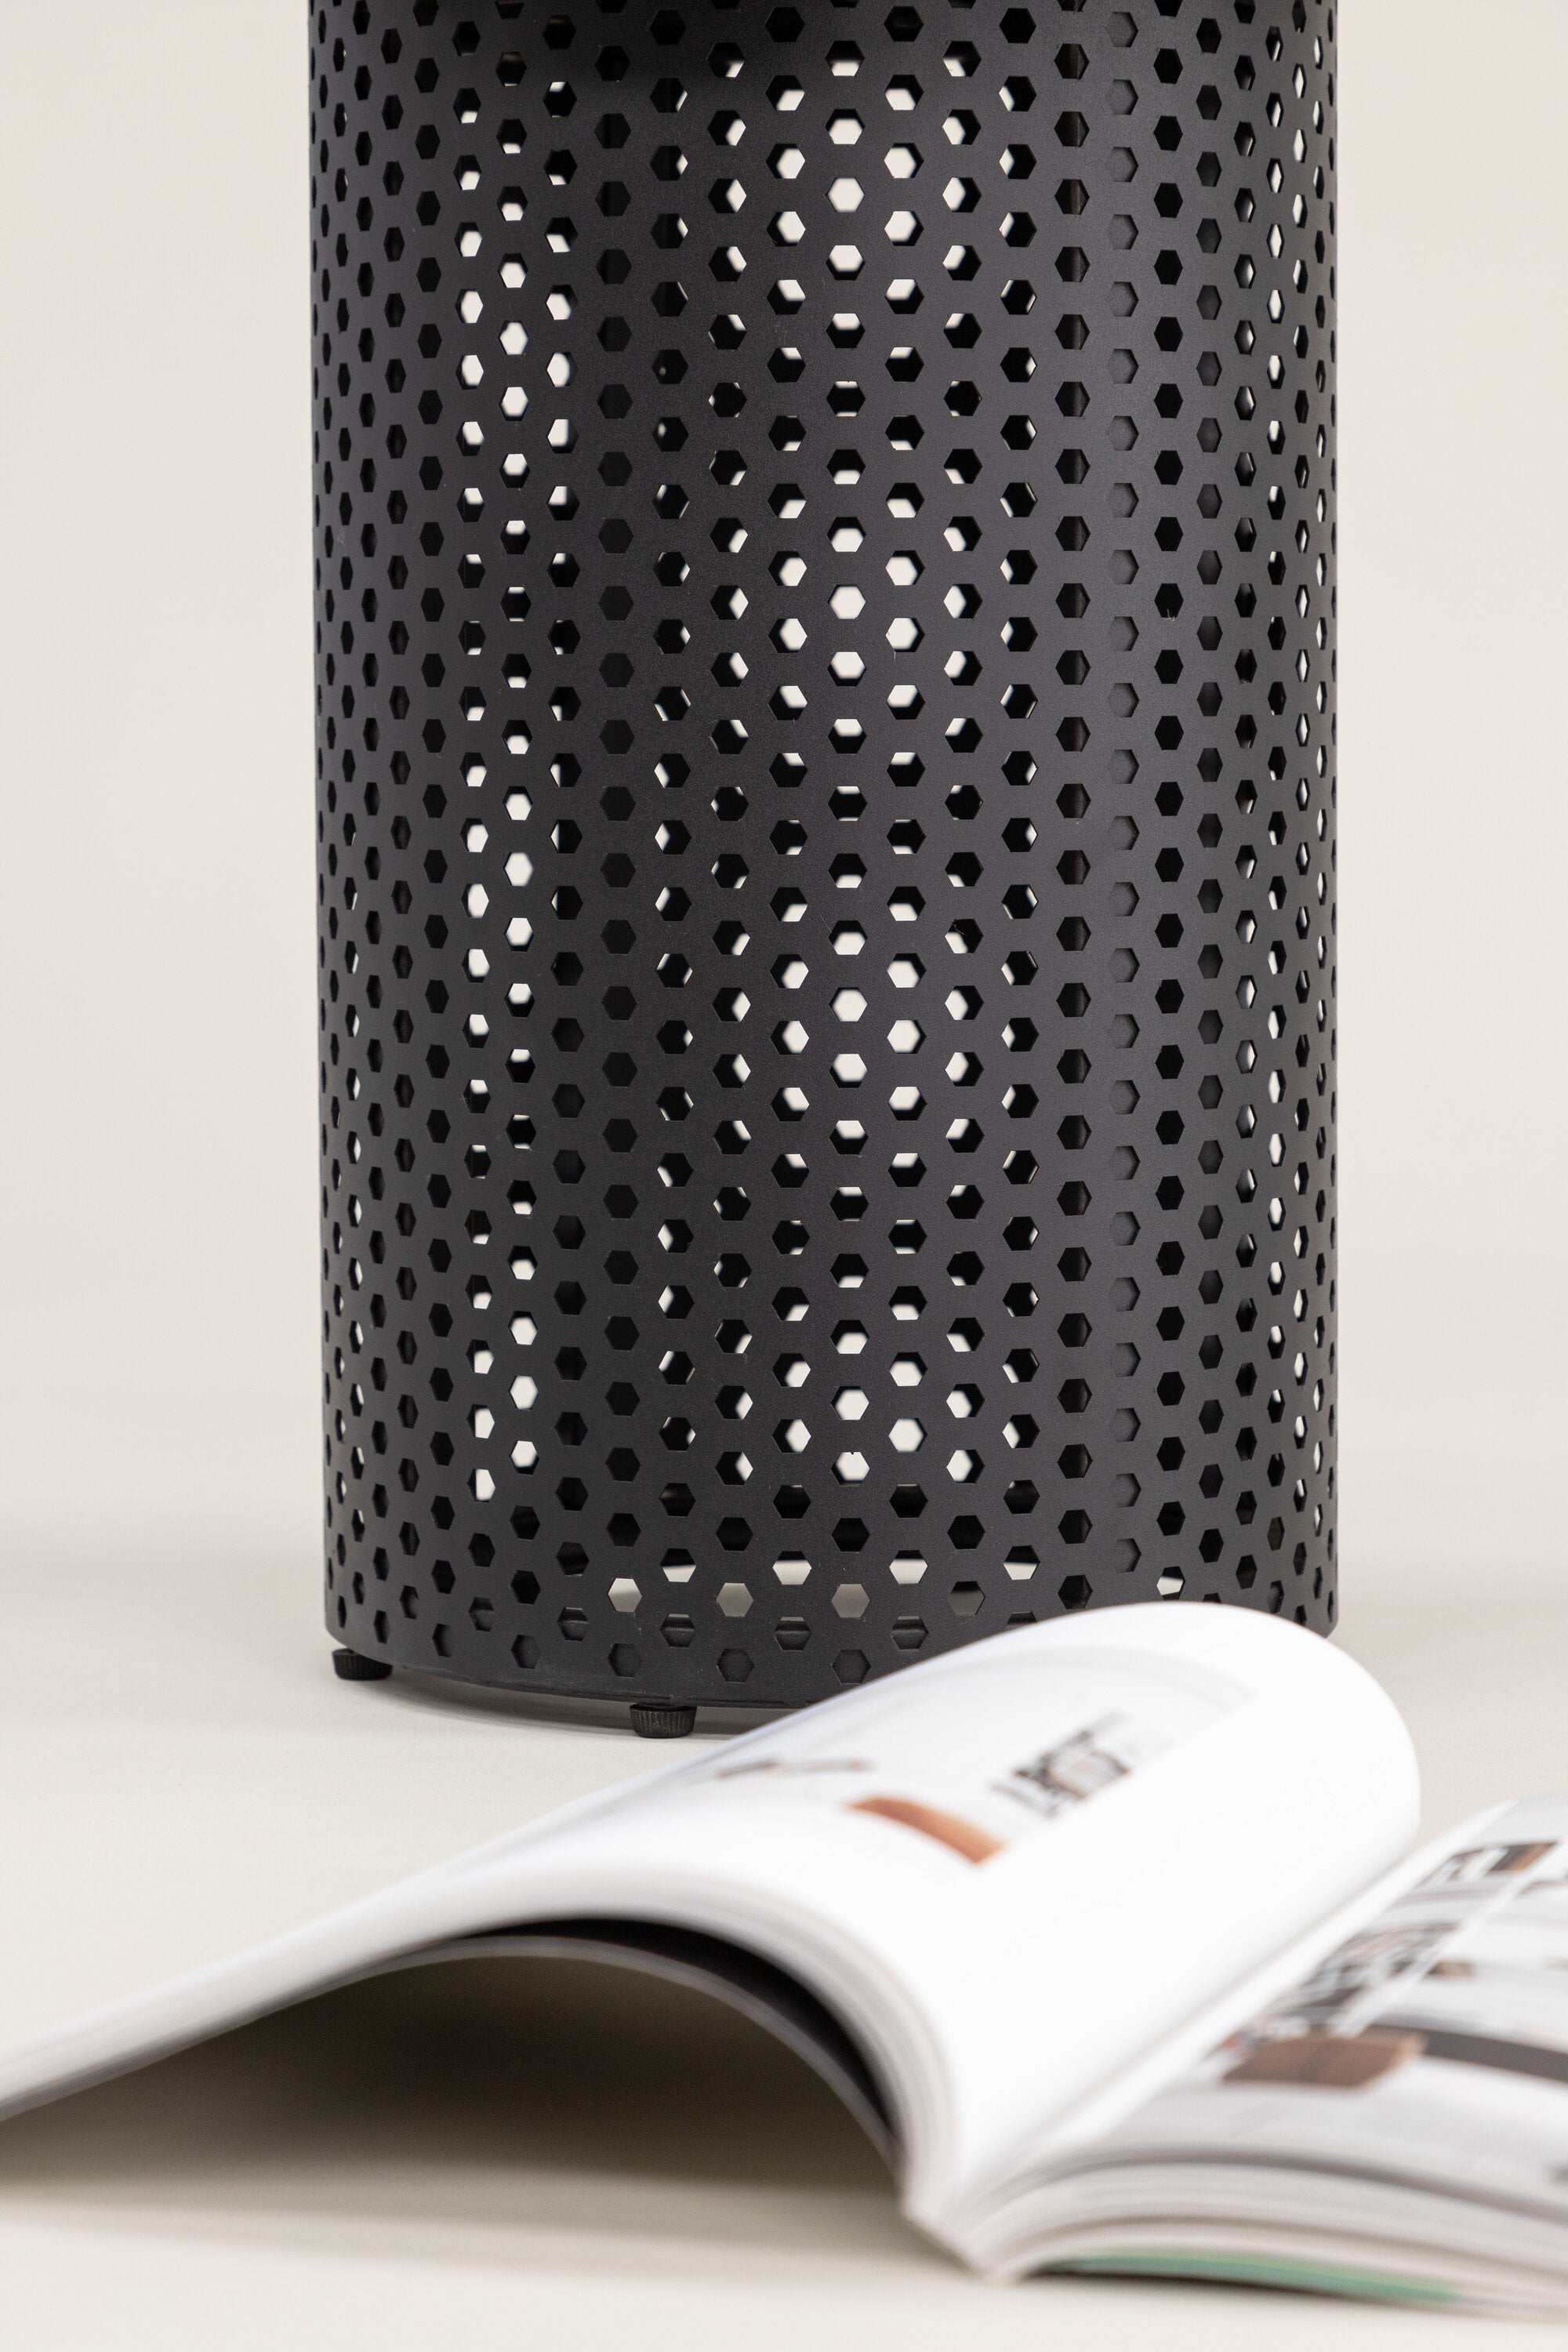 Bearsden x Josefin Lustig Beistelltisch in Schwarz präsentiert im Onlineshop von KAQTU Design AG. Beistelltisch ist von Vind